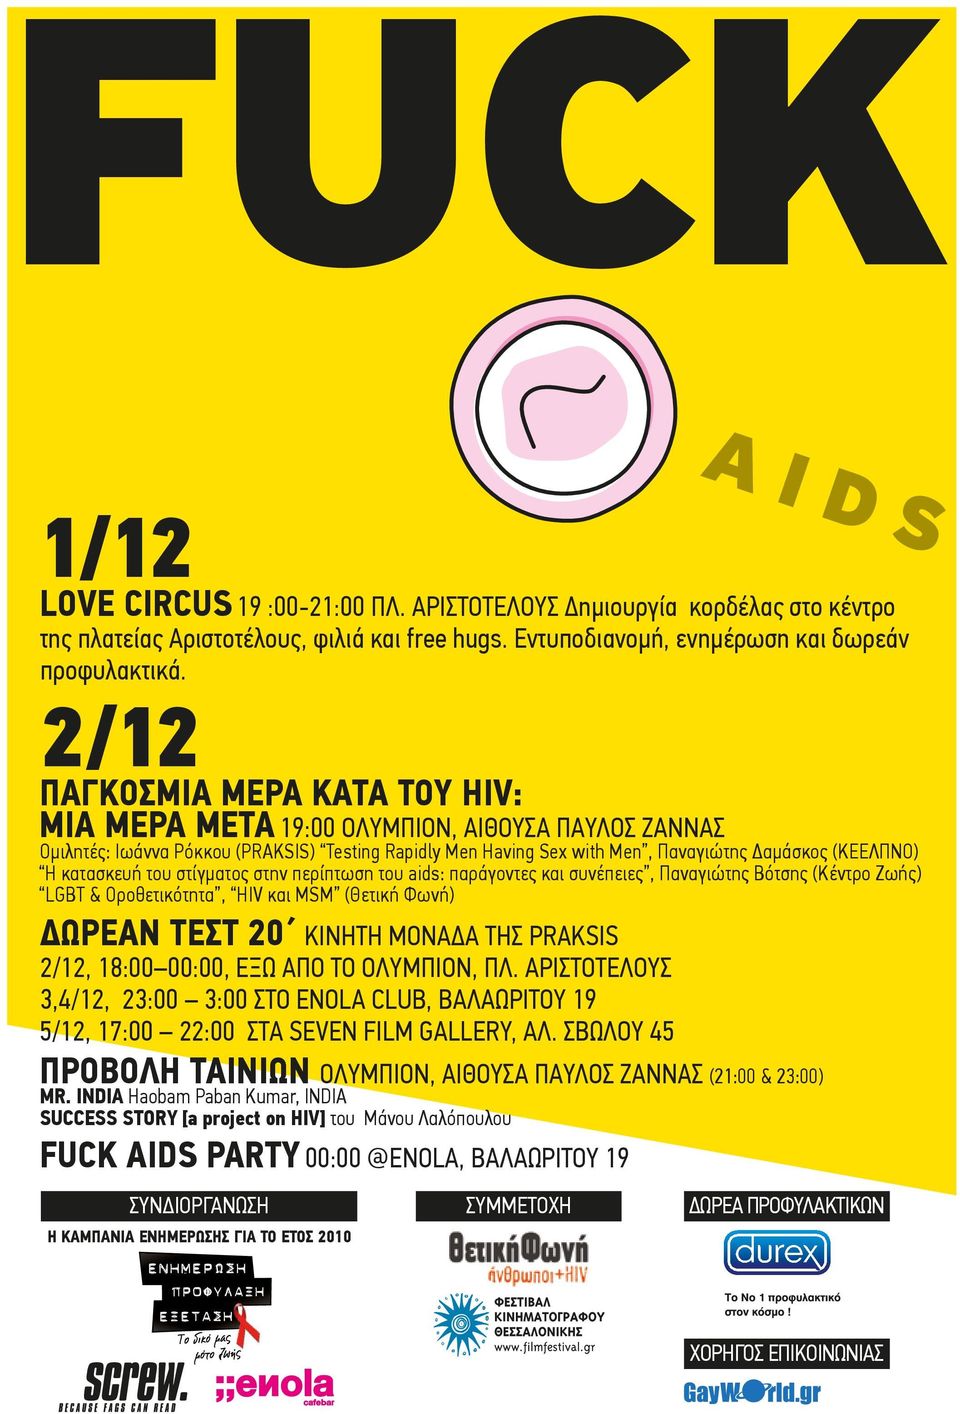 πρίπωση υ aids: πργς κ συέπς, Πγώης Βόσης (Κέρ Ζωής) LGBT & Ορθκόη, HIV κ MSM (Θκή Φωή) ΩΡΕΑΝ ΤΕΣΤ 20 ΚΙΝΗΤΗ ΜΟΝΑ Α ΤΗΣ PRAKSIS 2/12, 18:00 00:00, ΕΞΩ ΑΠΟ ΤΟ ΟΛΥΜΠΙΟΝ, ΠΛ.